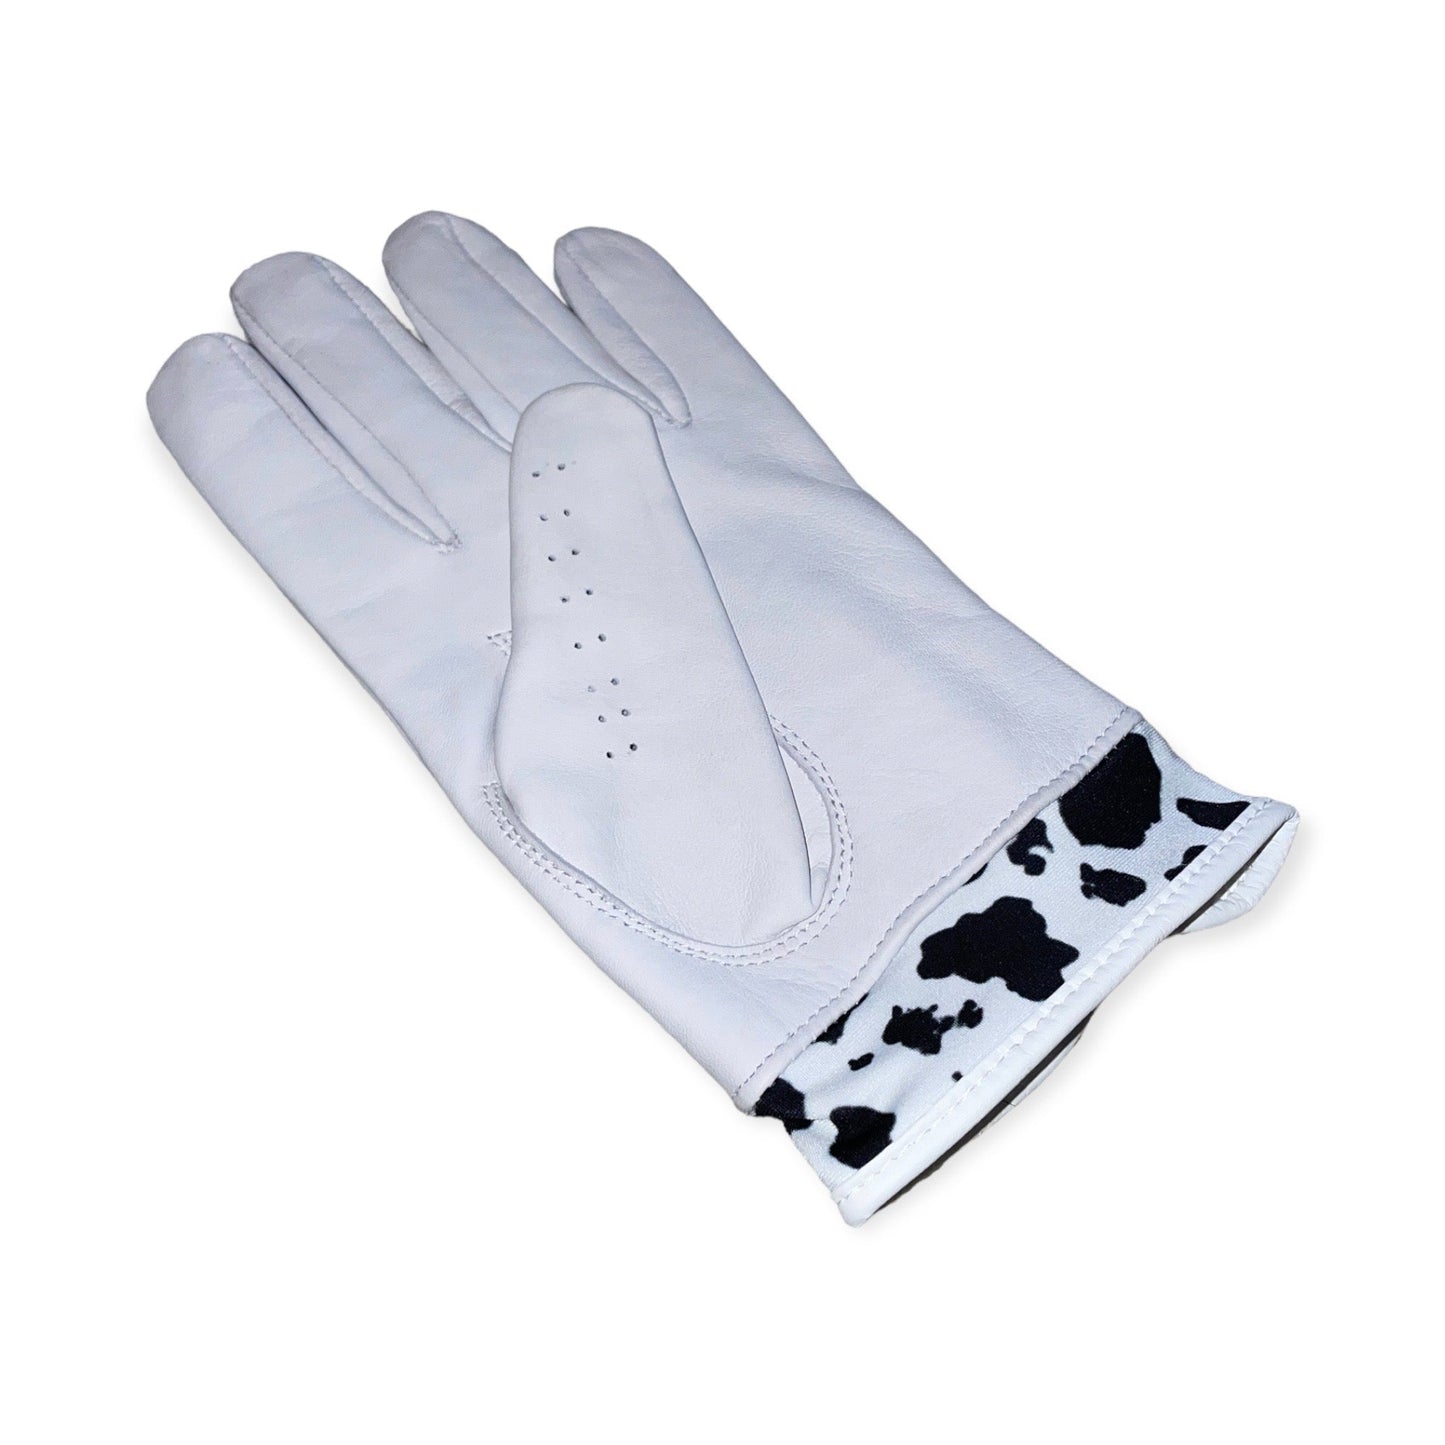 Womens White Udderly Turrible glove